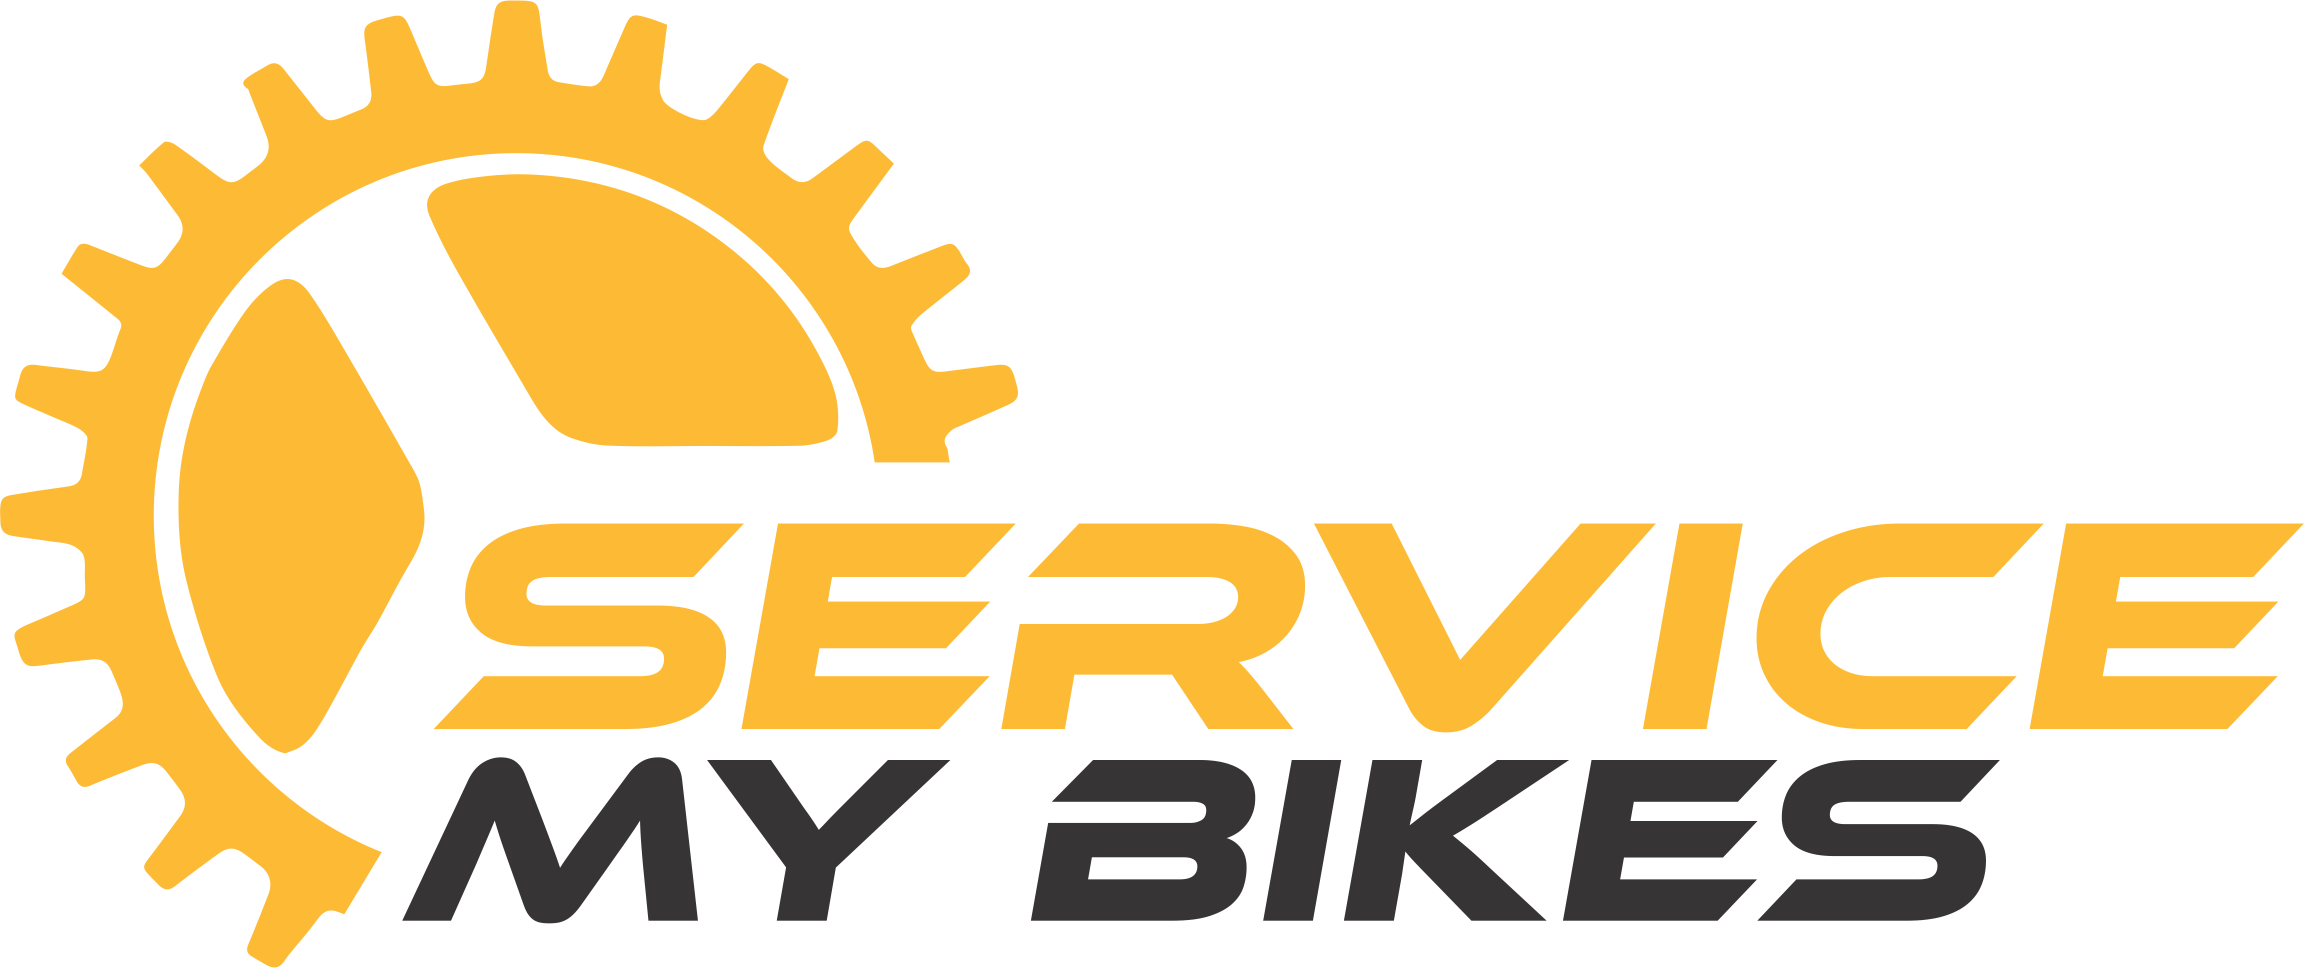 12,809 Bike Repair Logo Images, Stock Photos & Vectors | Shutterstock